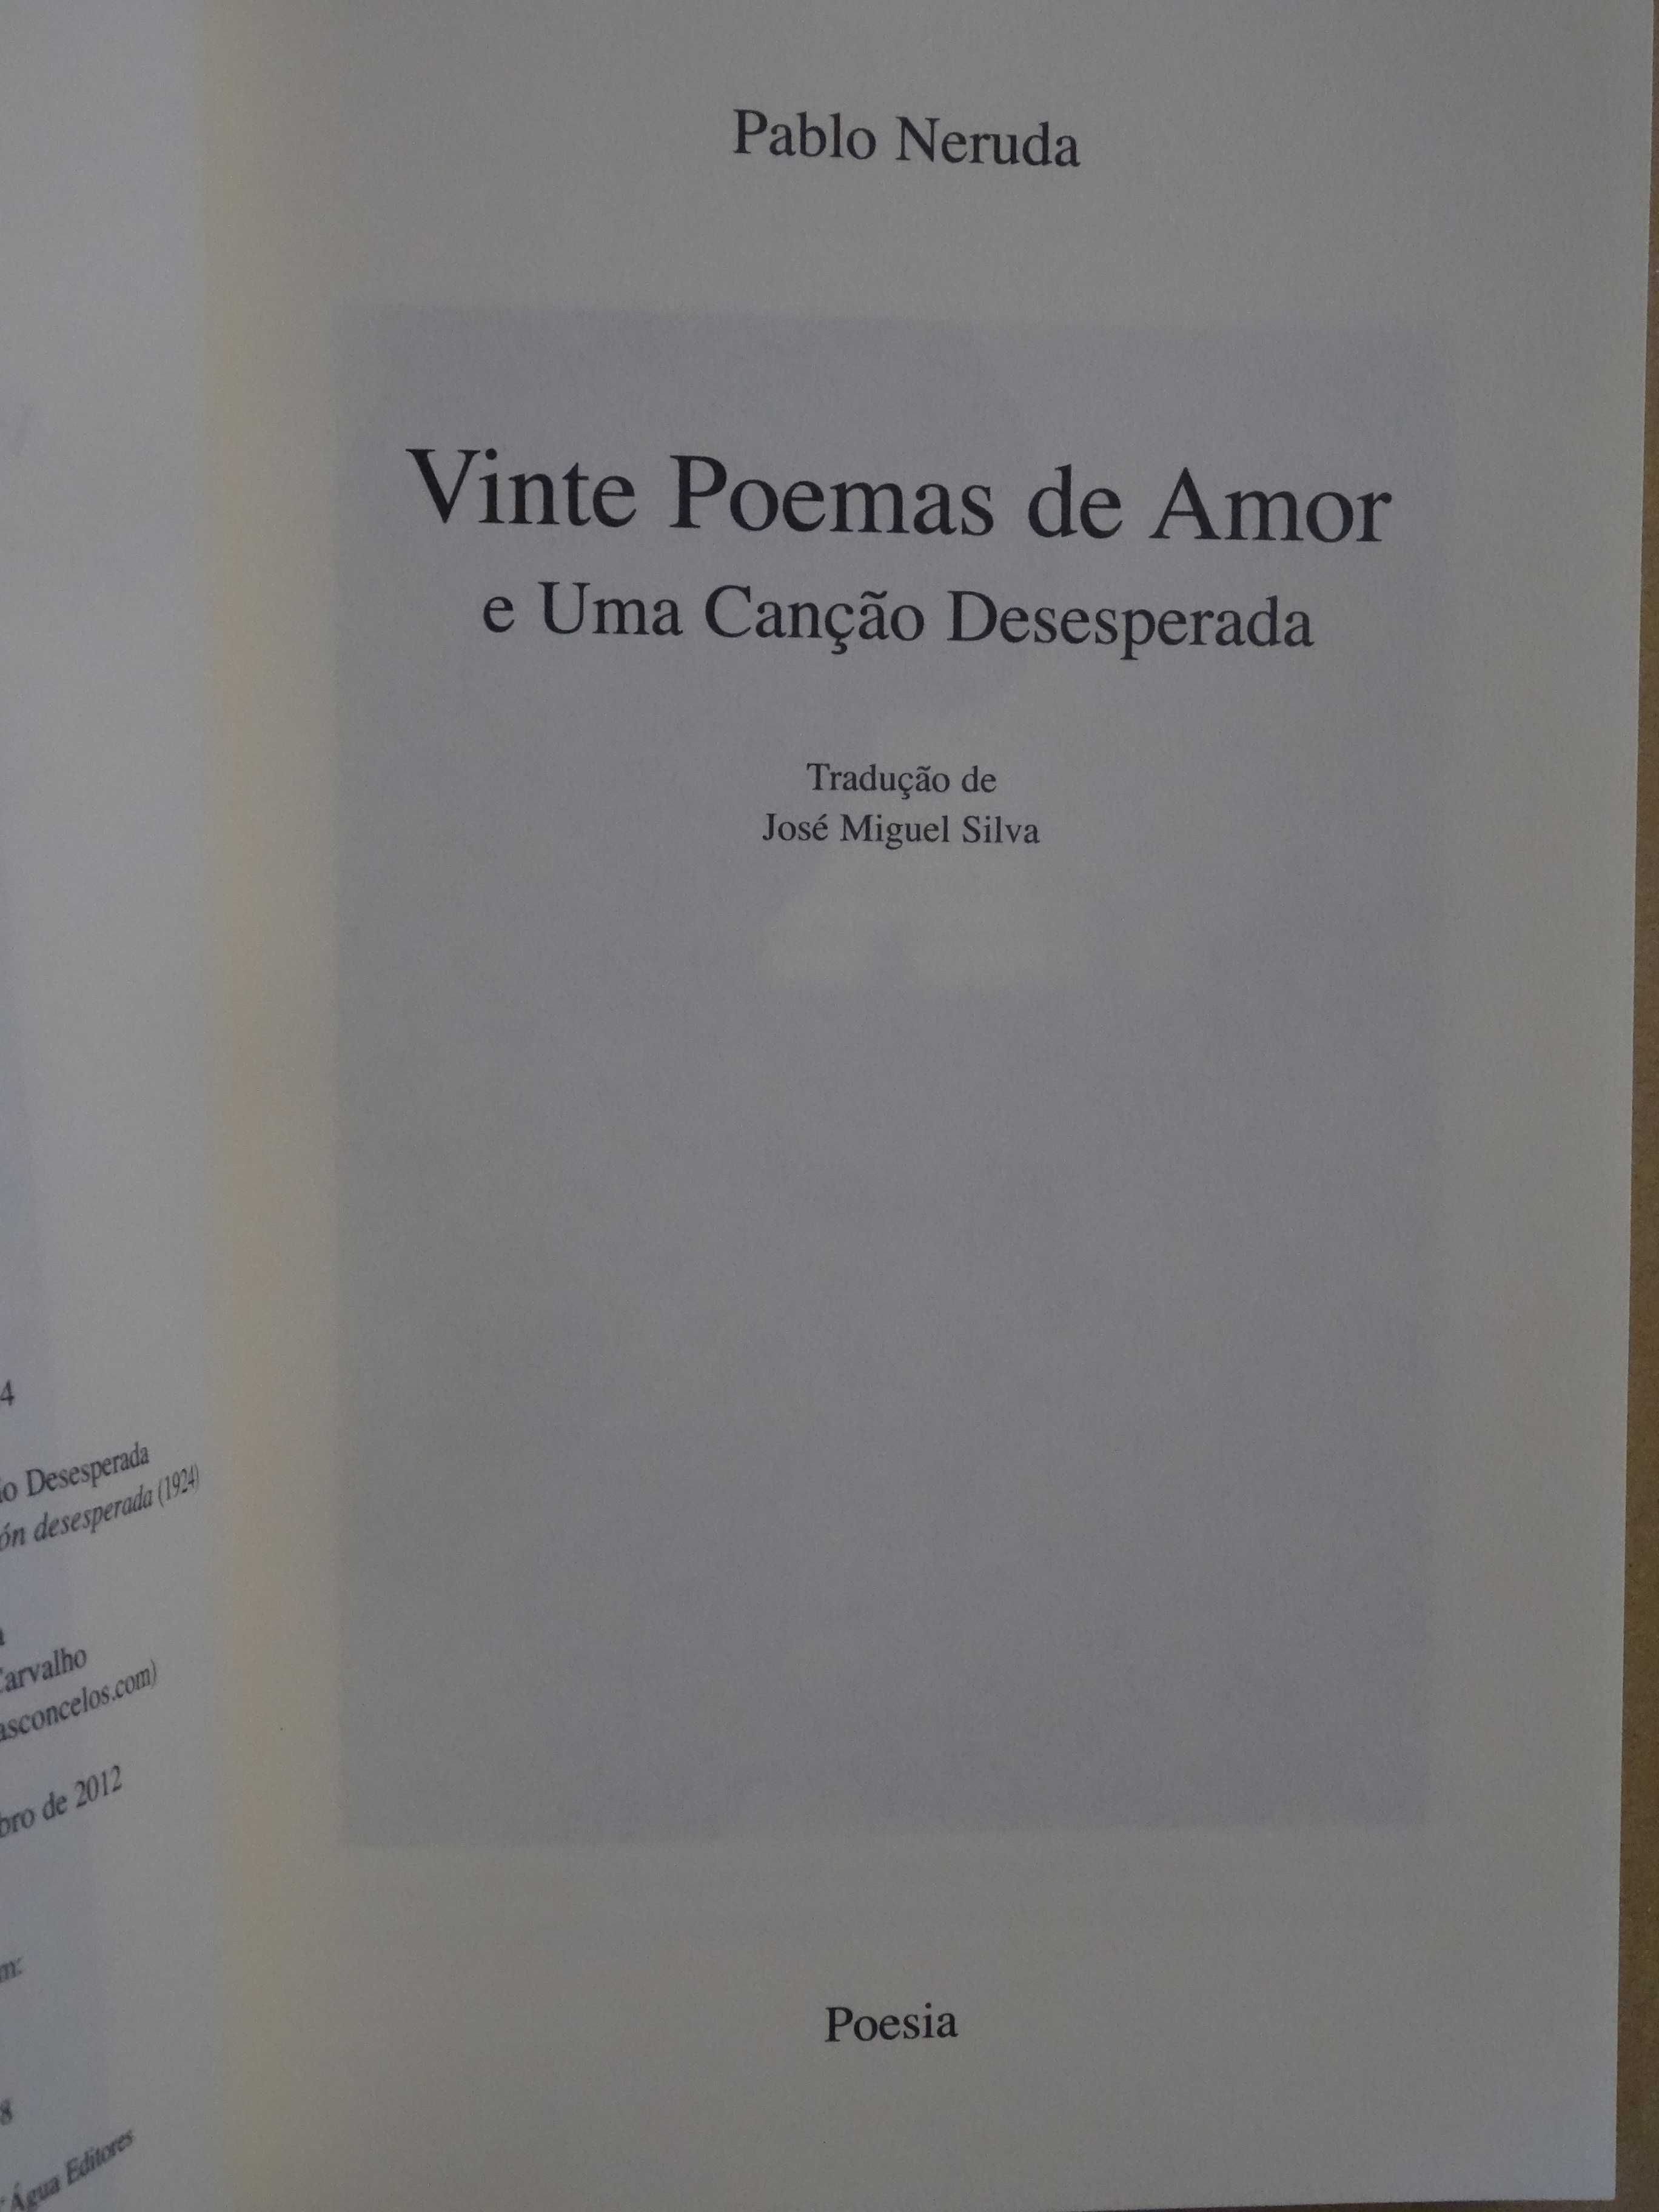 Vinte Poemas de Amor e Uma Canção Desesperada de Pablo Neruda